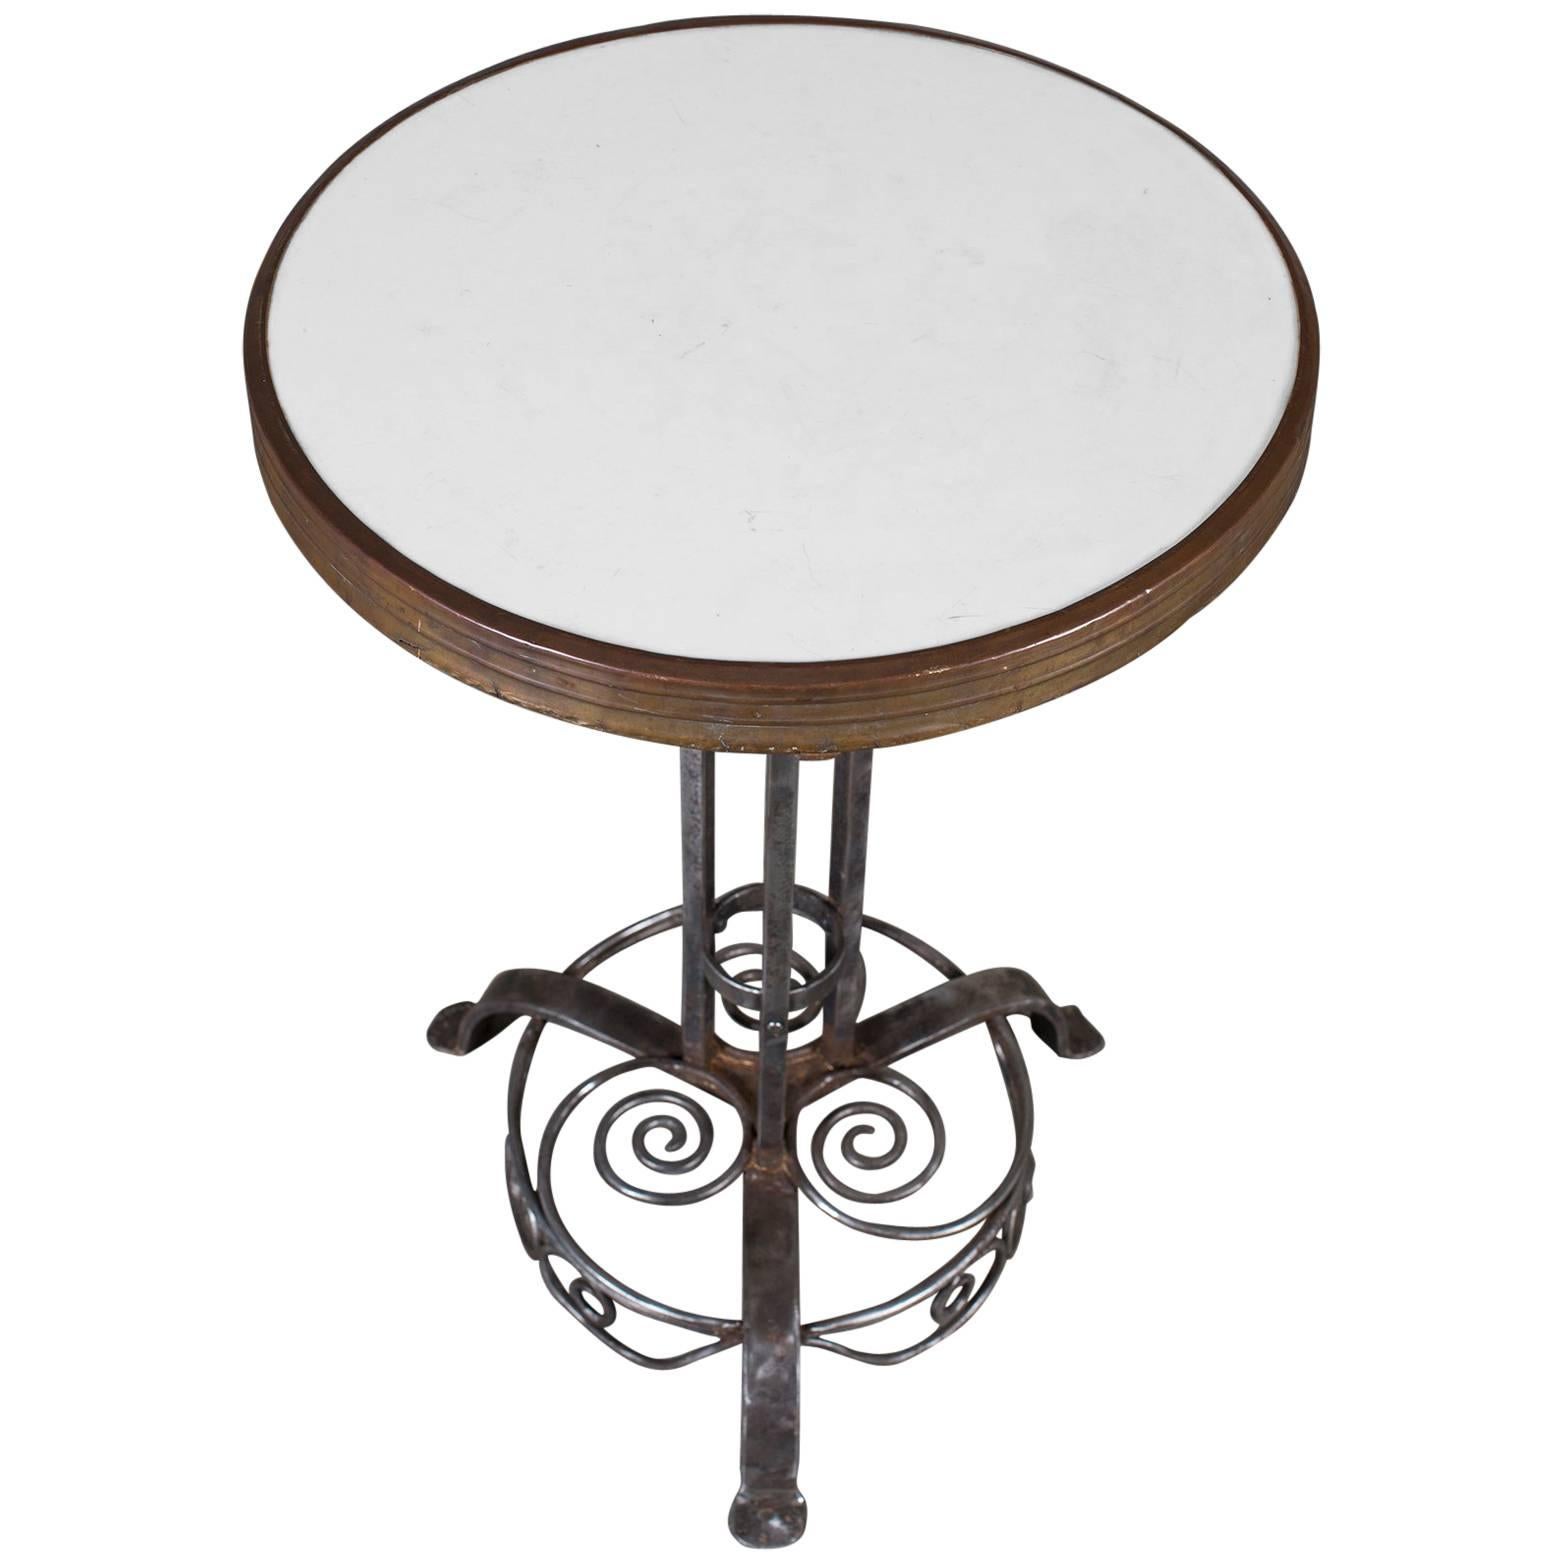 Antique German Art Nouveau Iron Marble-Top Table, Munich, circa 1910